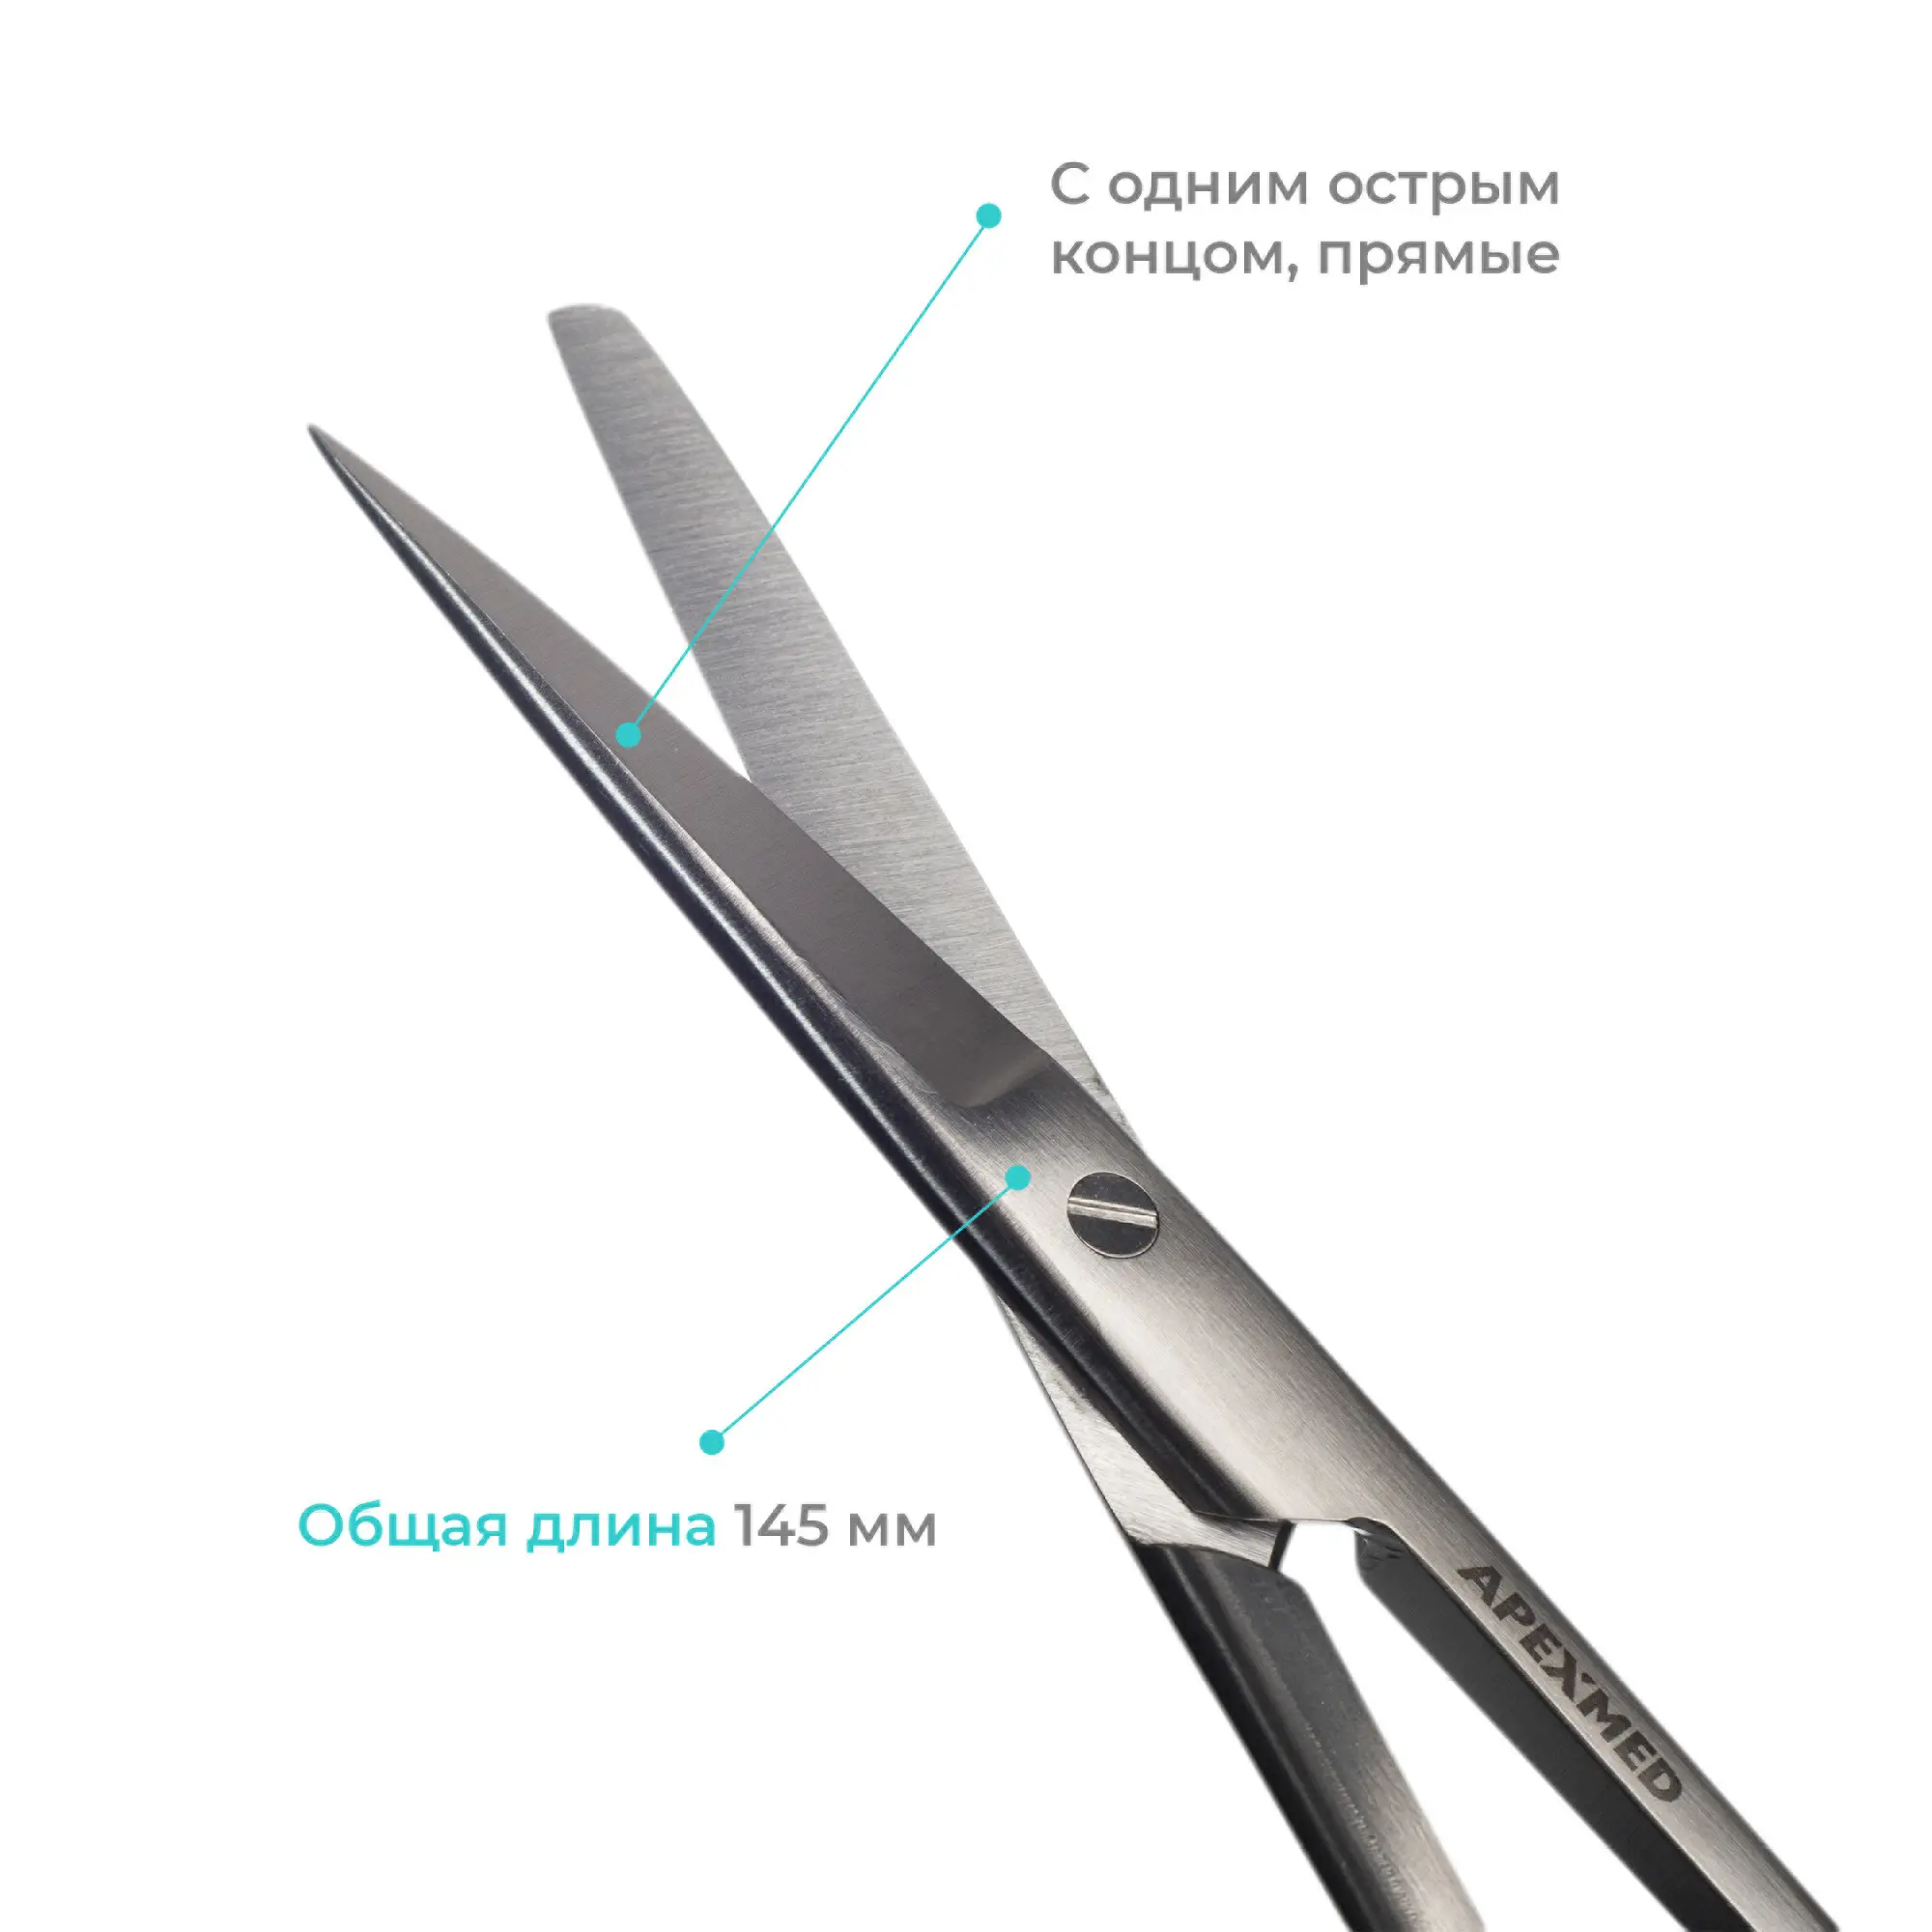 Ножницы хирургические Standard (Стандарт) с одним острым концом, прямые, 145 мм, Apexmed